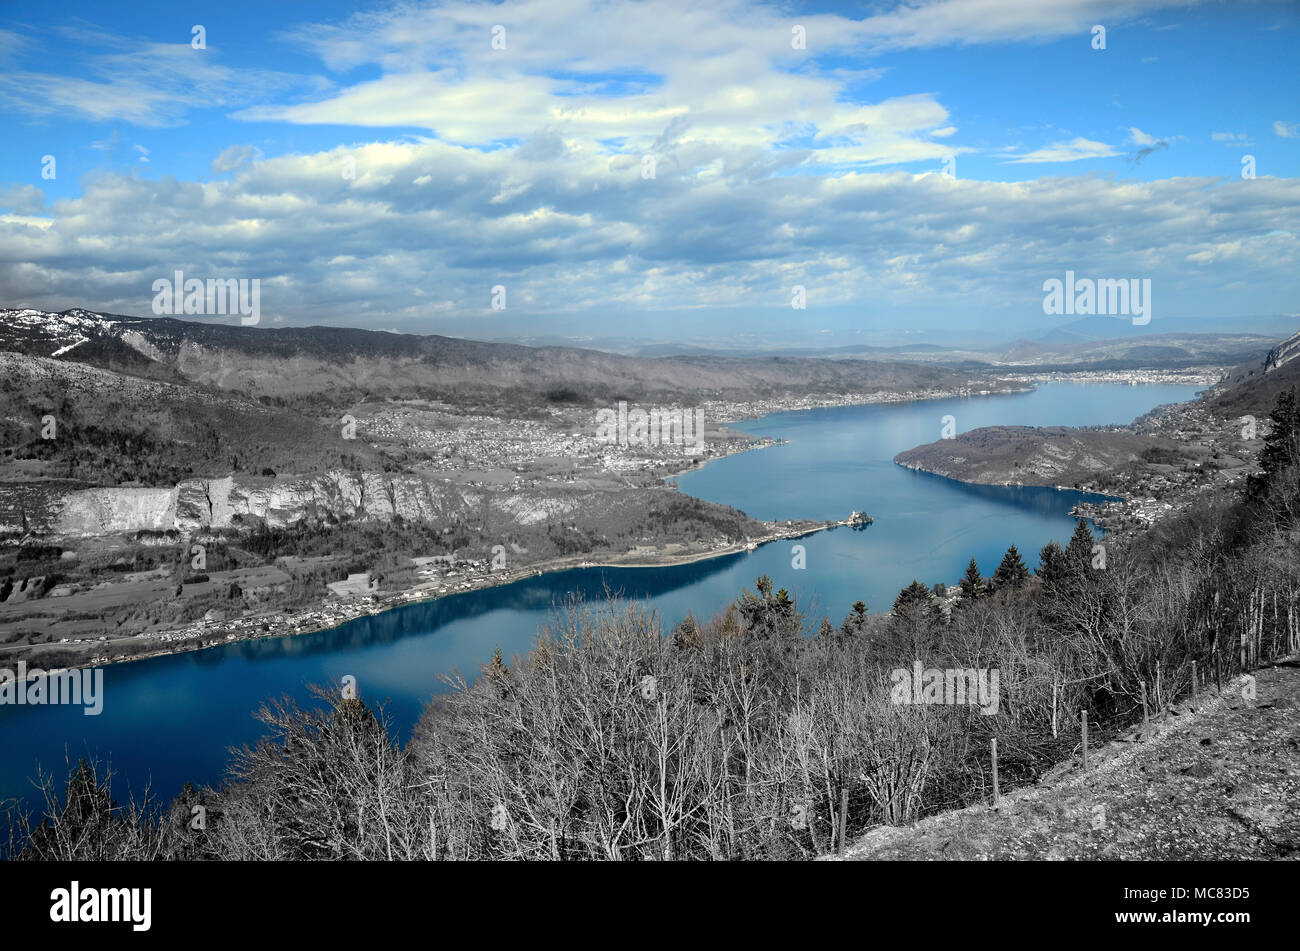 Grande vue d'Annecy le lac bleu et les montagnes du col de la Forclaz, désaturation partielle l'effet noir et blanc, France Banque D'Images